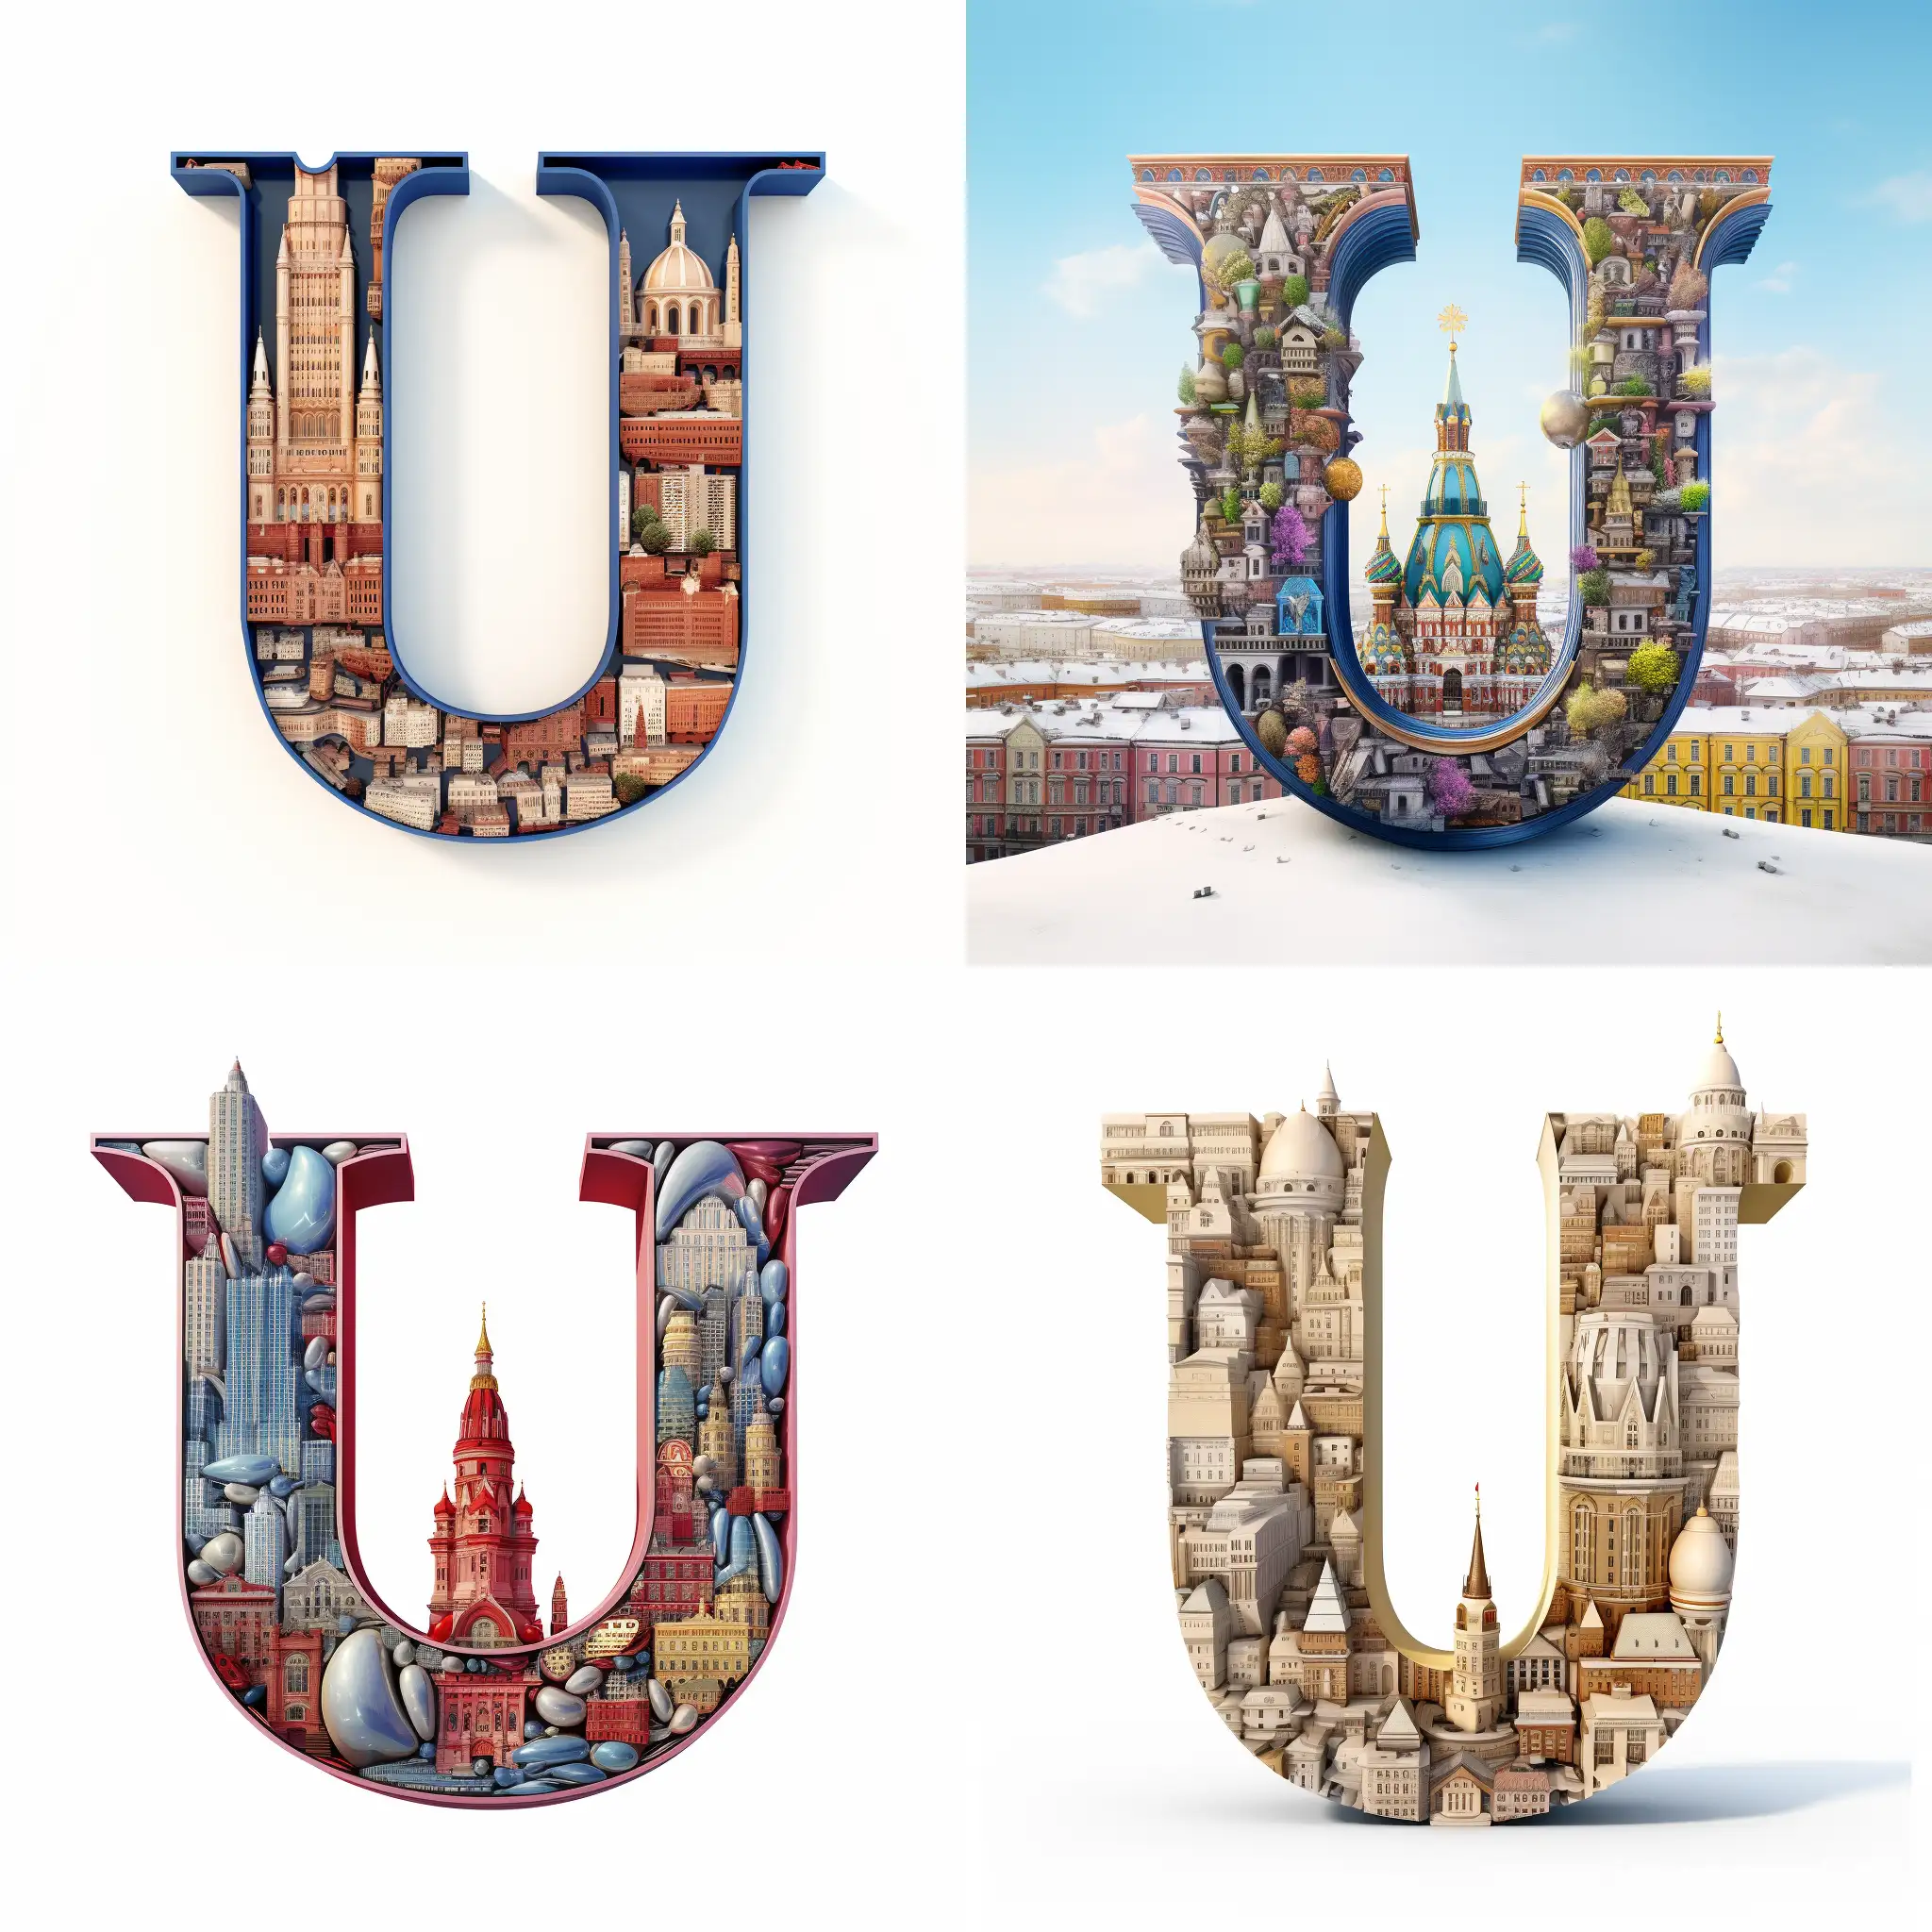 Urban-Skyline-U-Shape-Moscow-Buildings-in-3D-Rendering